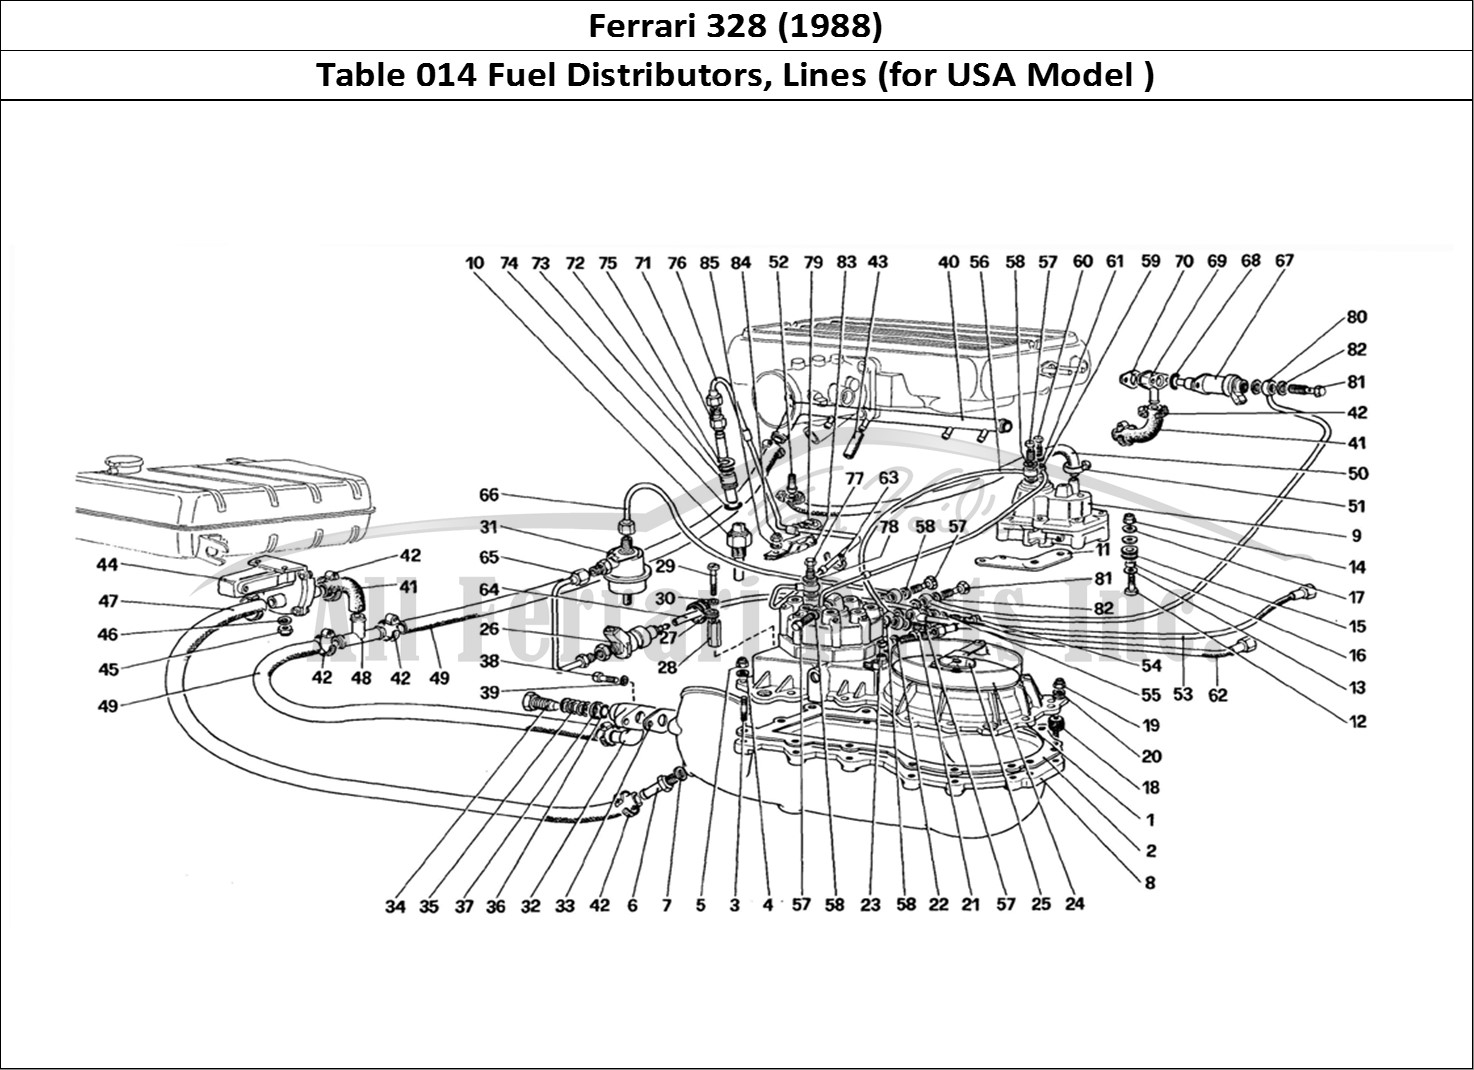 Ferrari Parts Ferrari 328 (1988) Page 014 Fuel Distributors Lines (